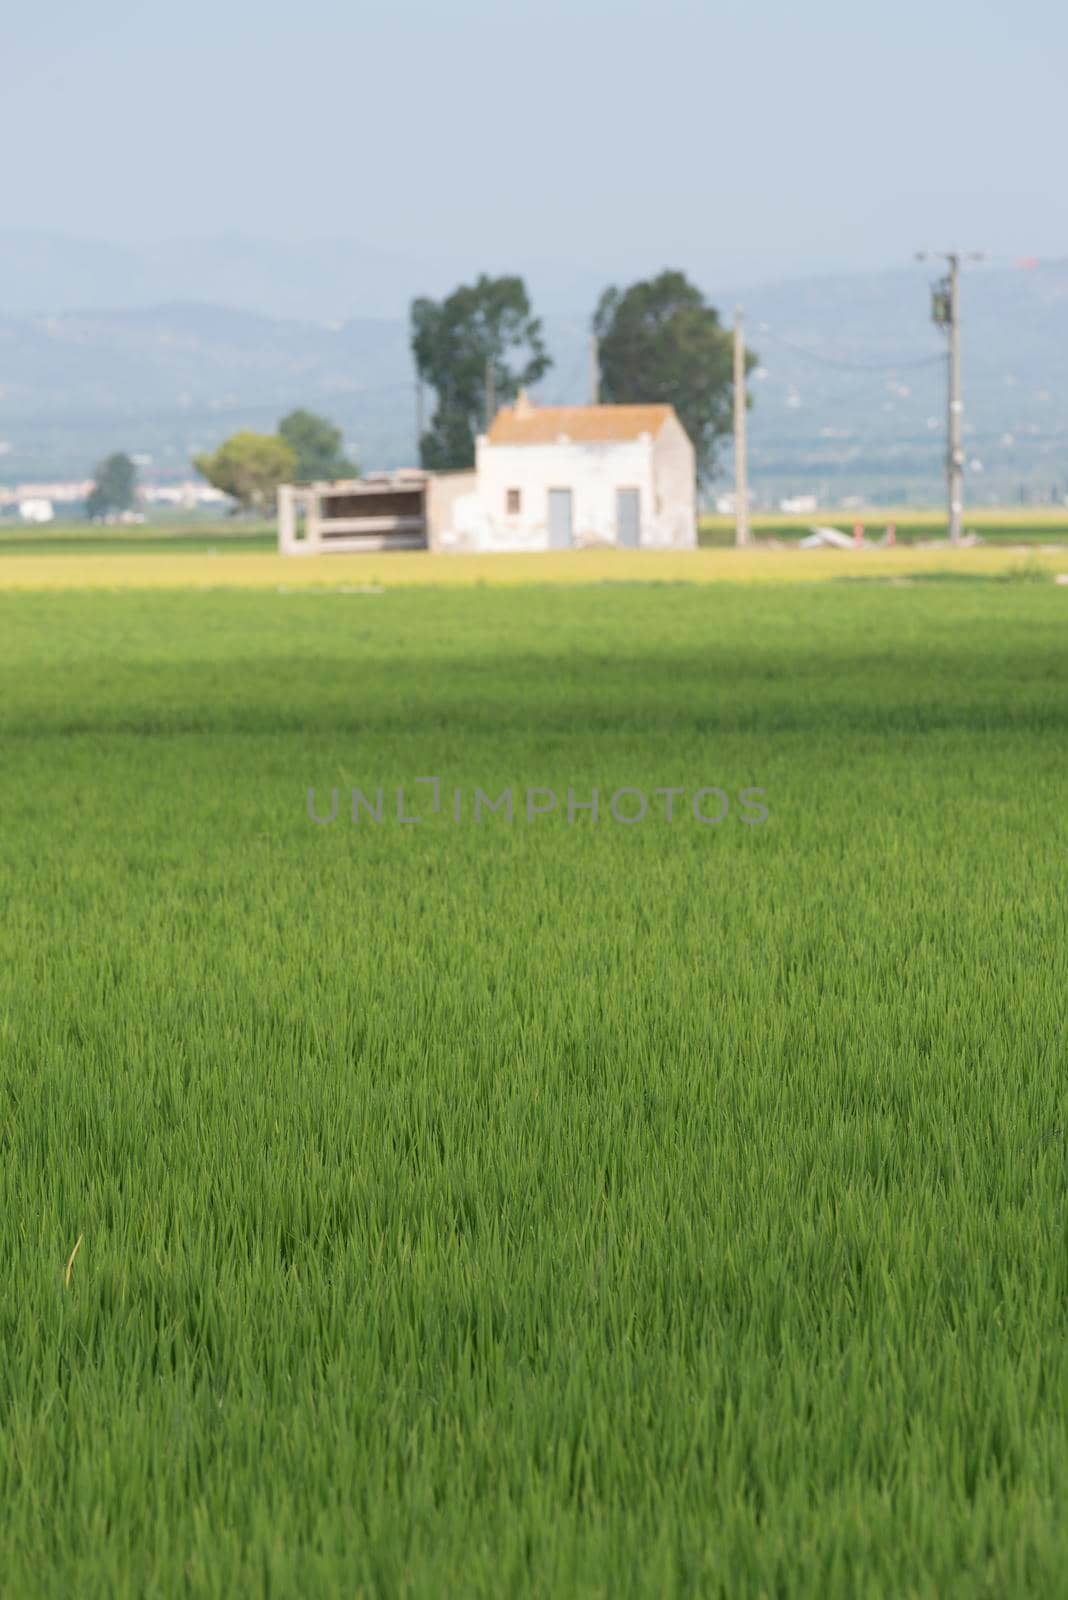 Rice paddy landscape on a sunny day by raferto1973